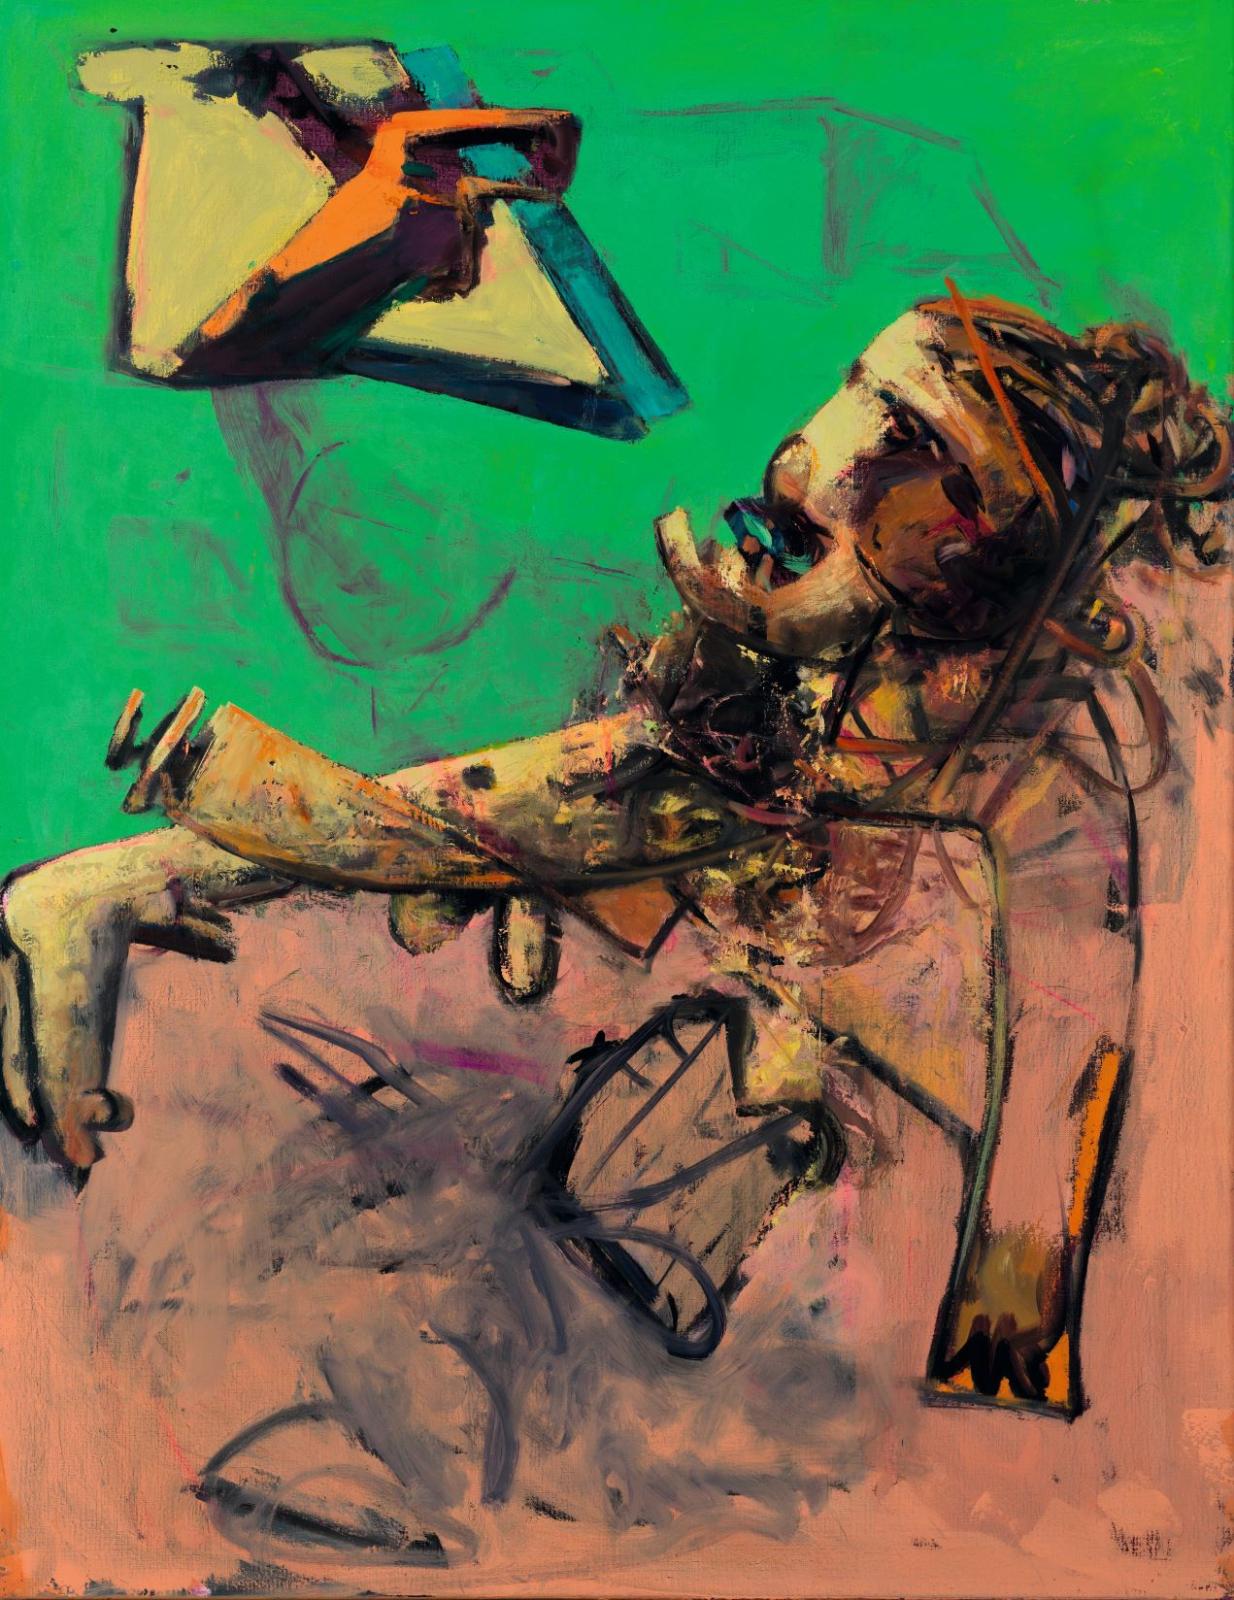 Max Kaminski, Liegende, 1995, Öl auf Leinwand, 146 x 115 cm, Preis auf Anfrage